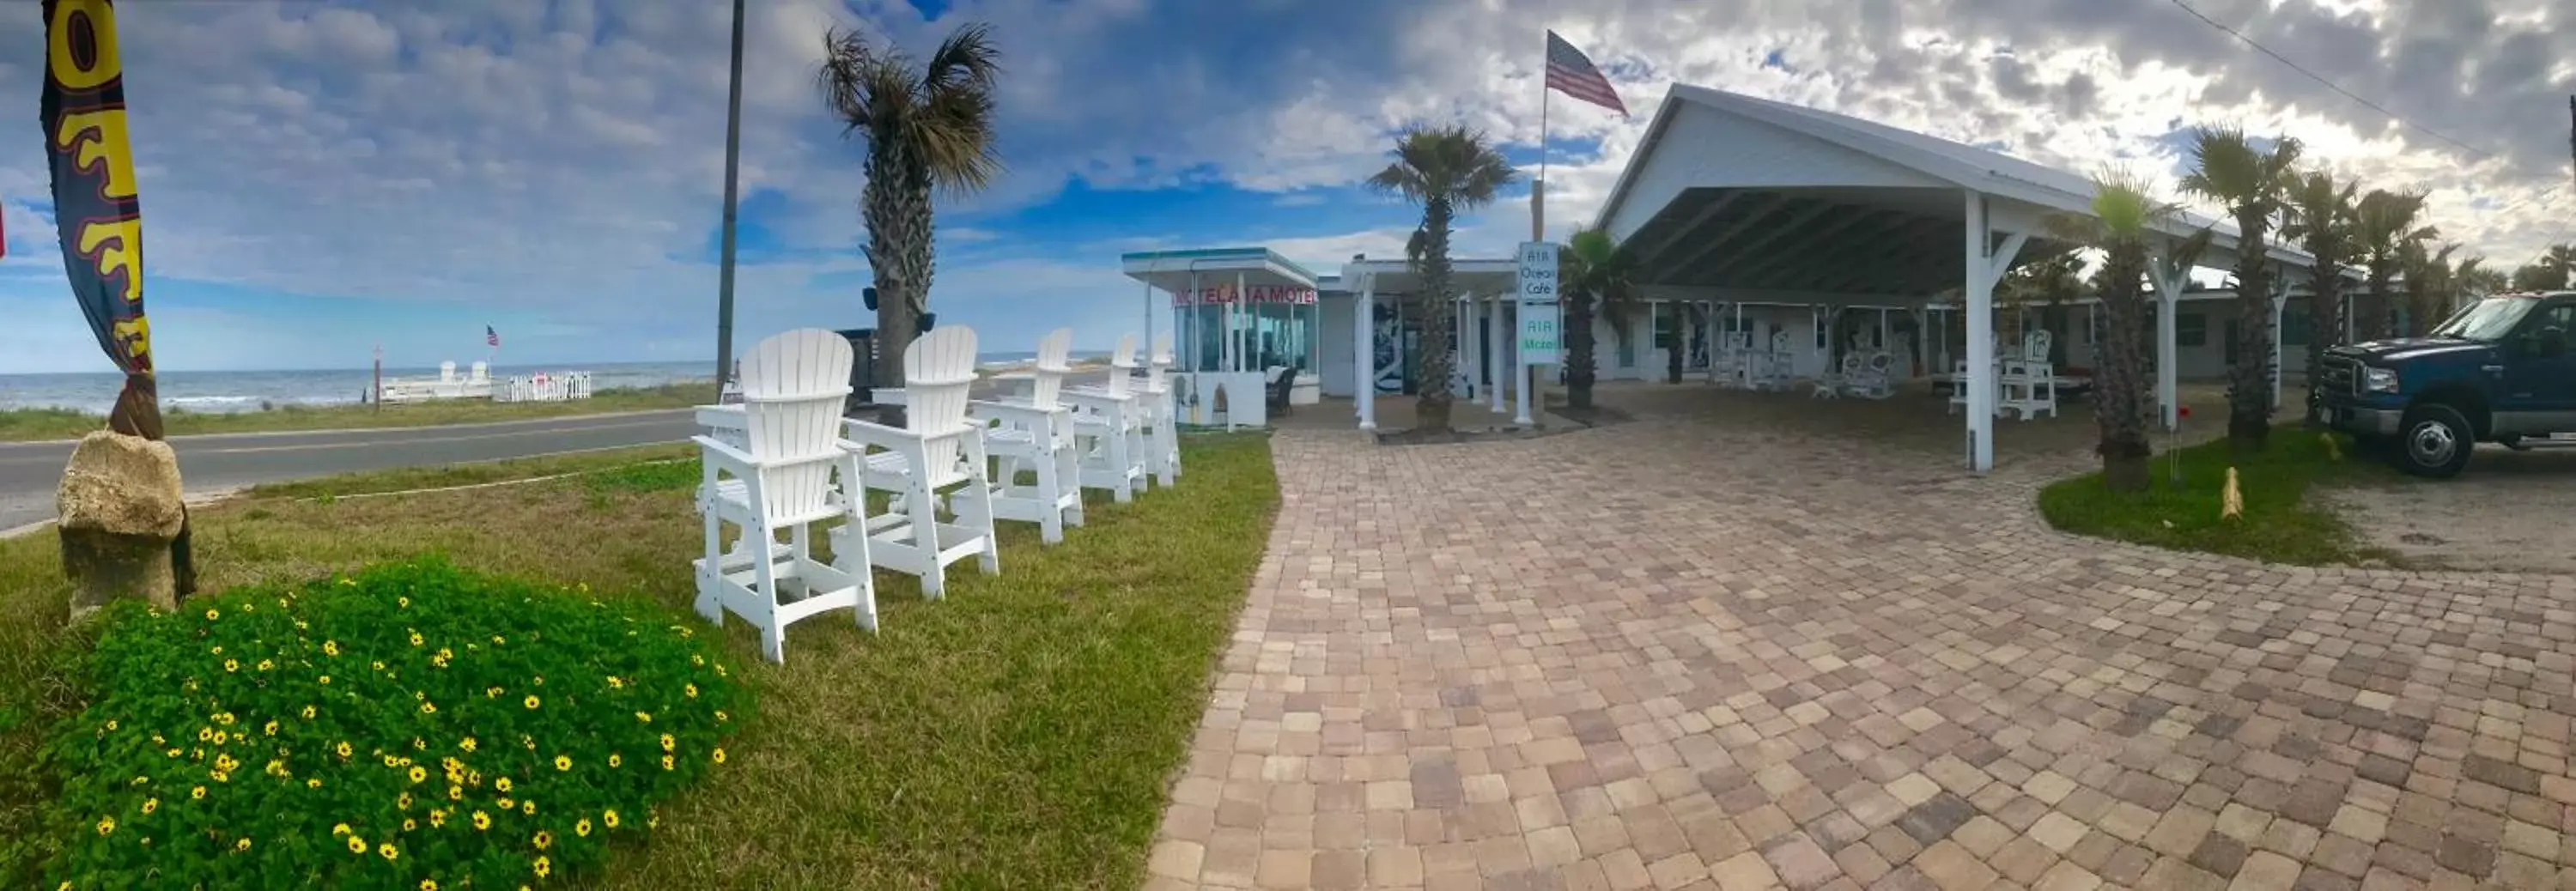 Banquet Facilities in A1A Ocean Club